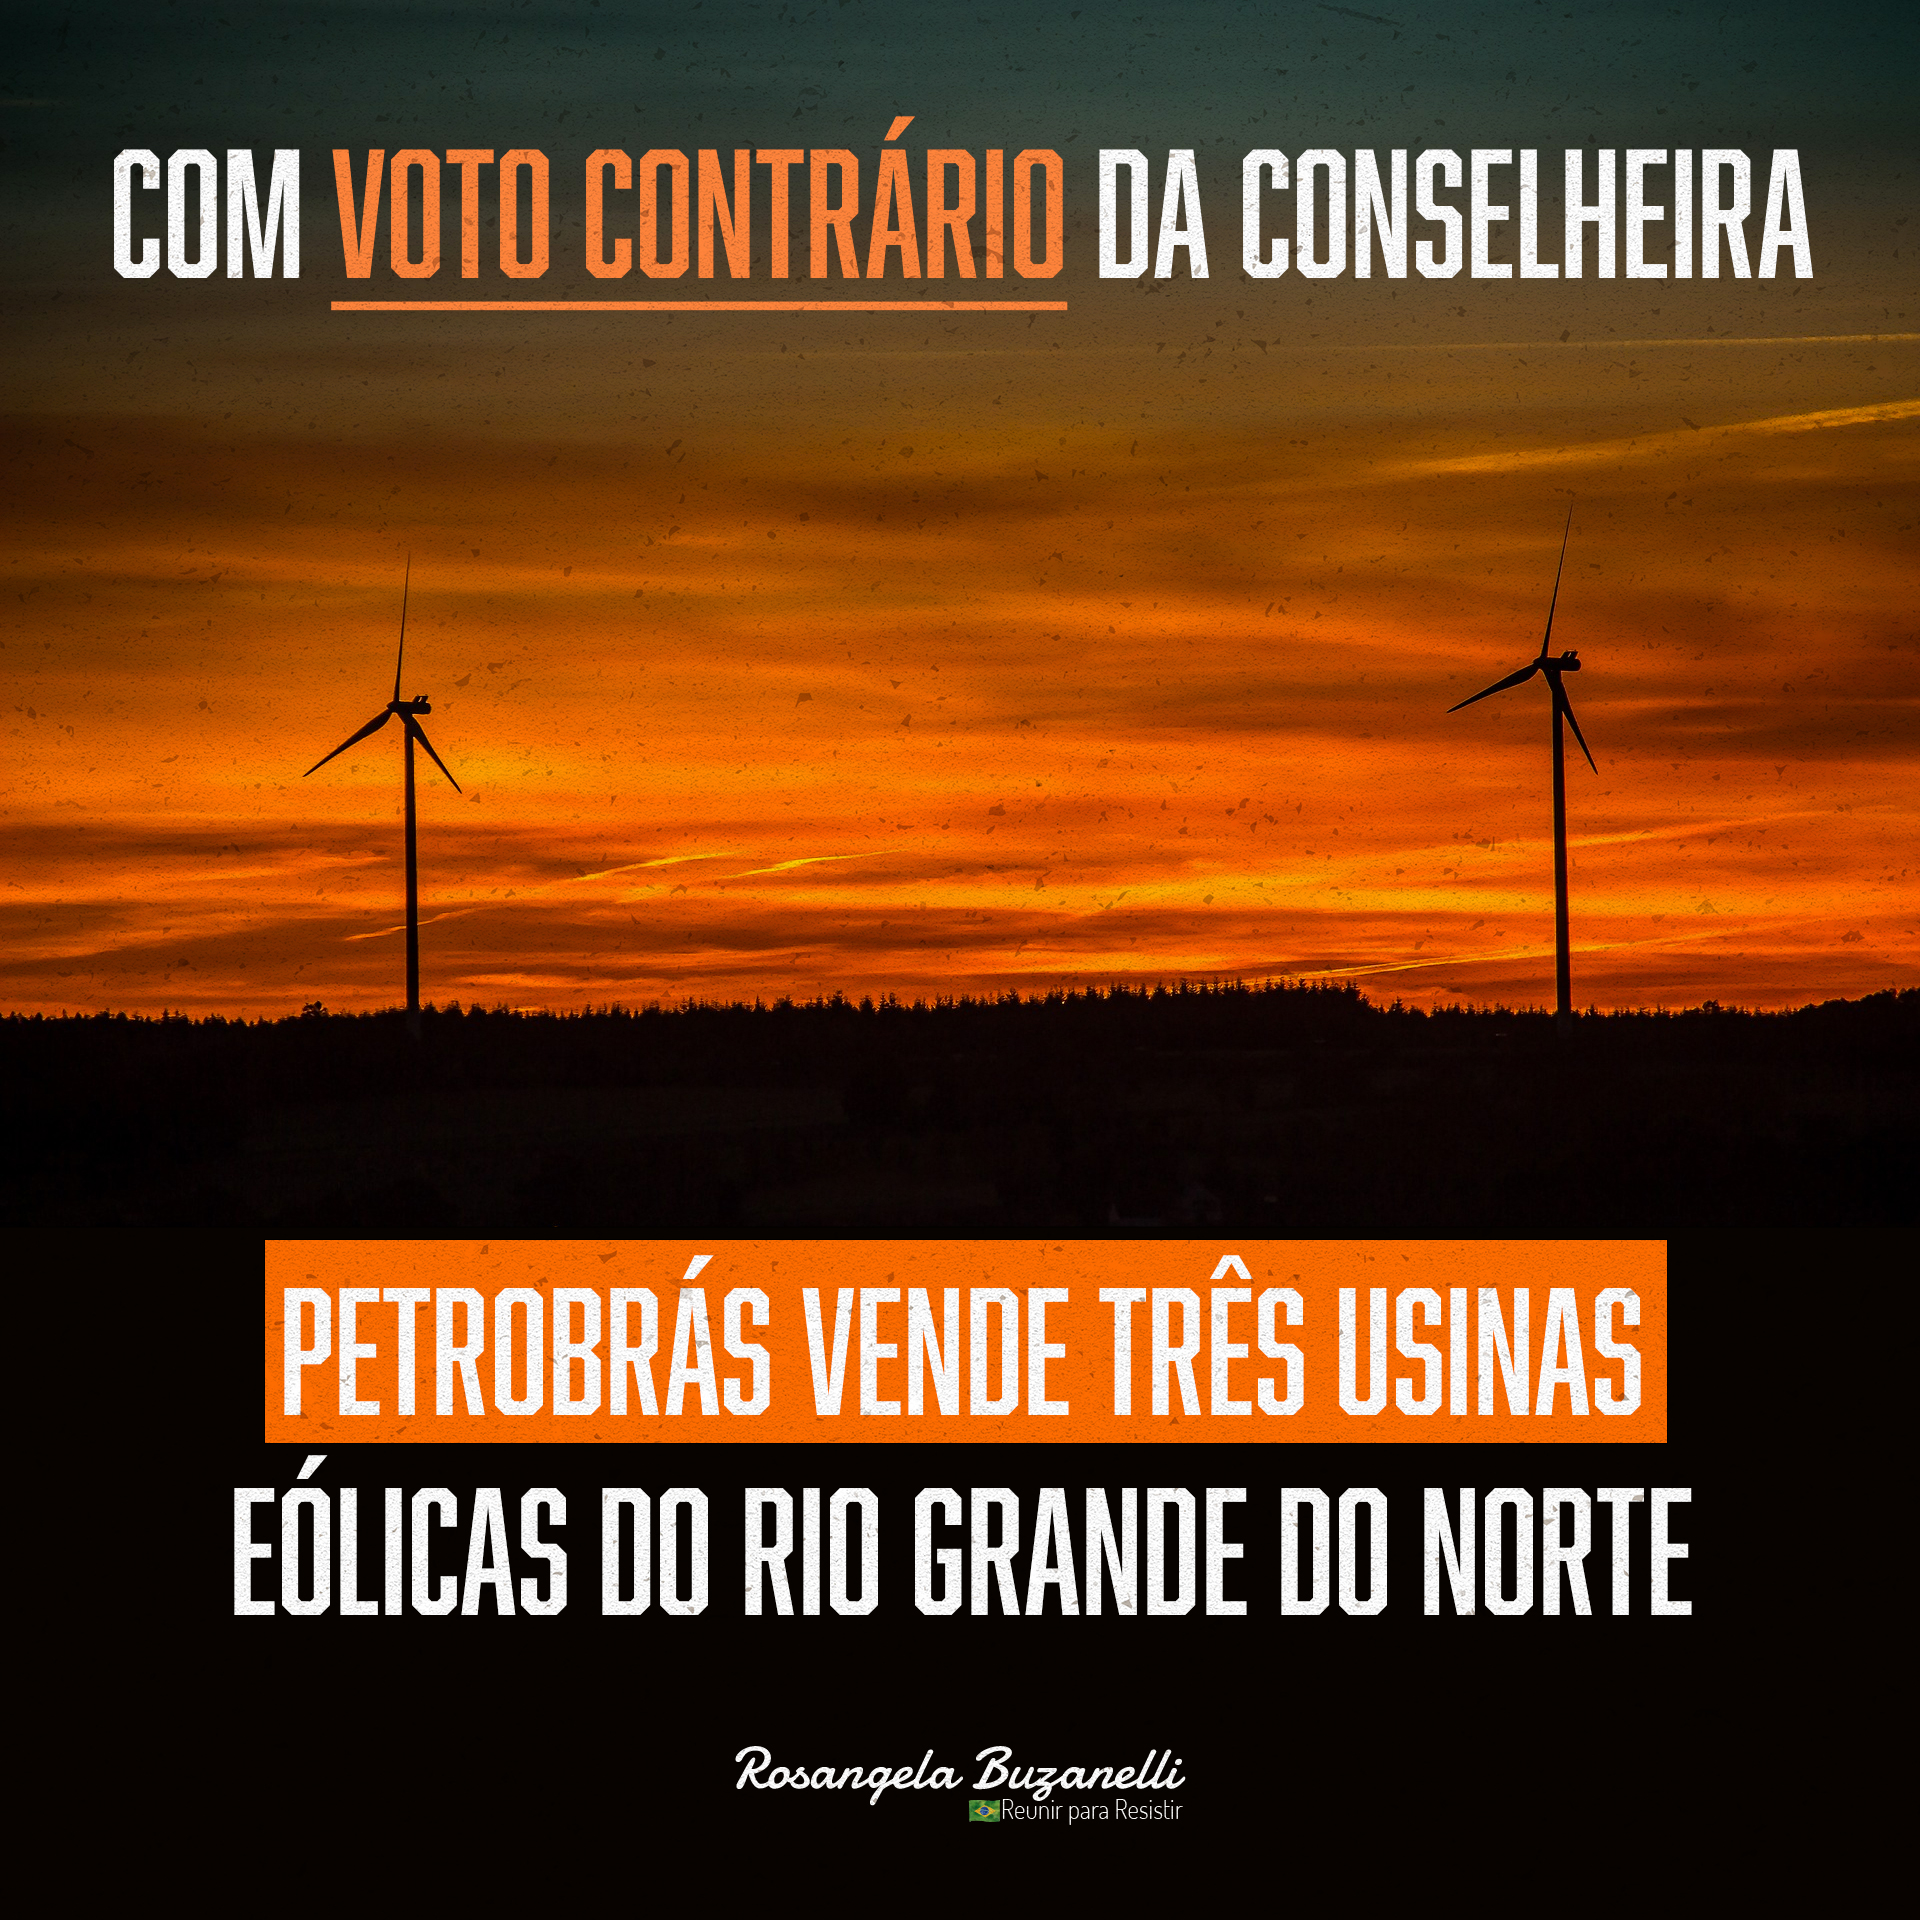 Com voto contrário da conselheira Rosângela Buzanelli, Petrobrás vende três usinas eólicas do Rio Grande do Norte